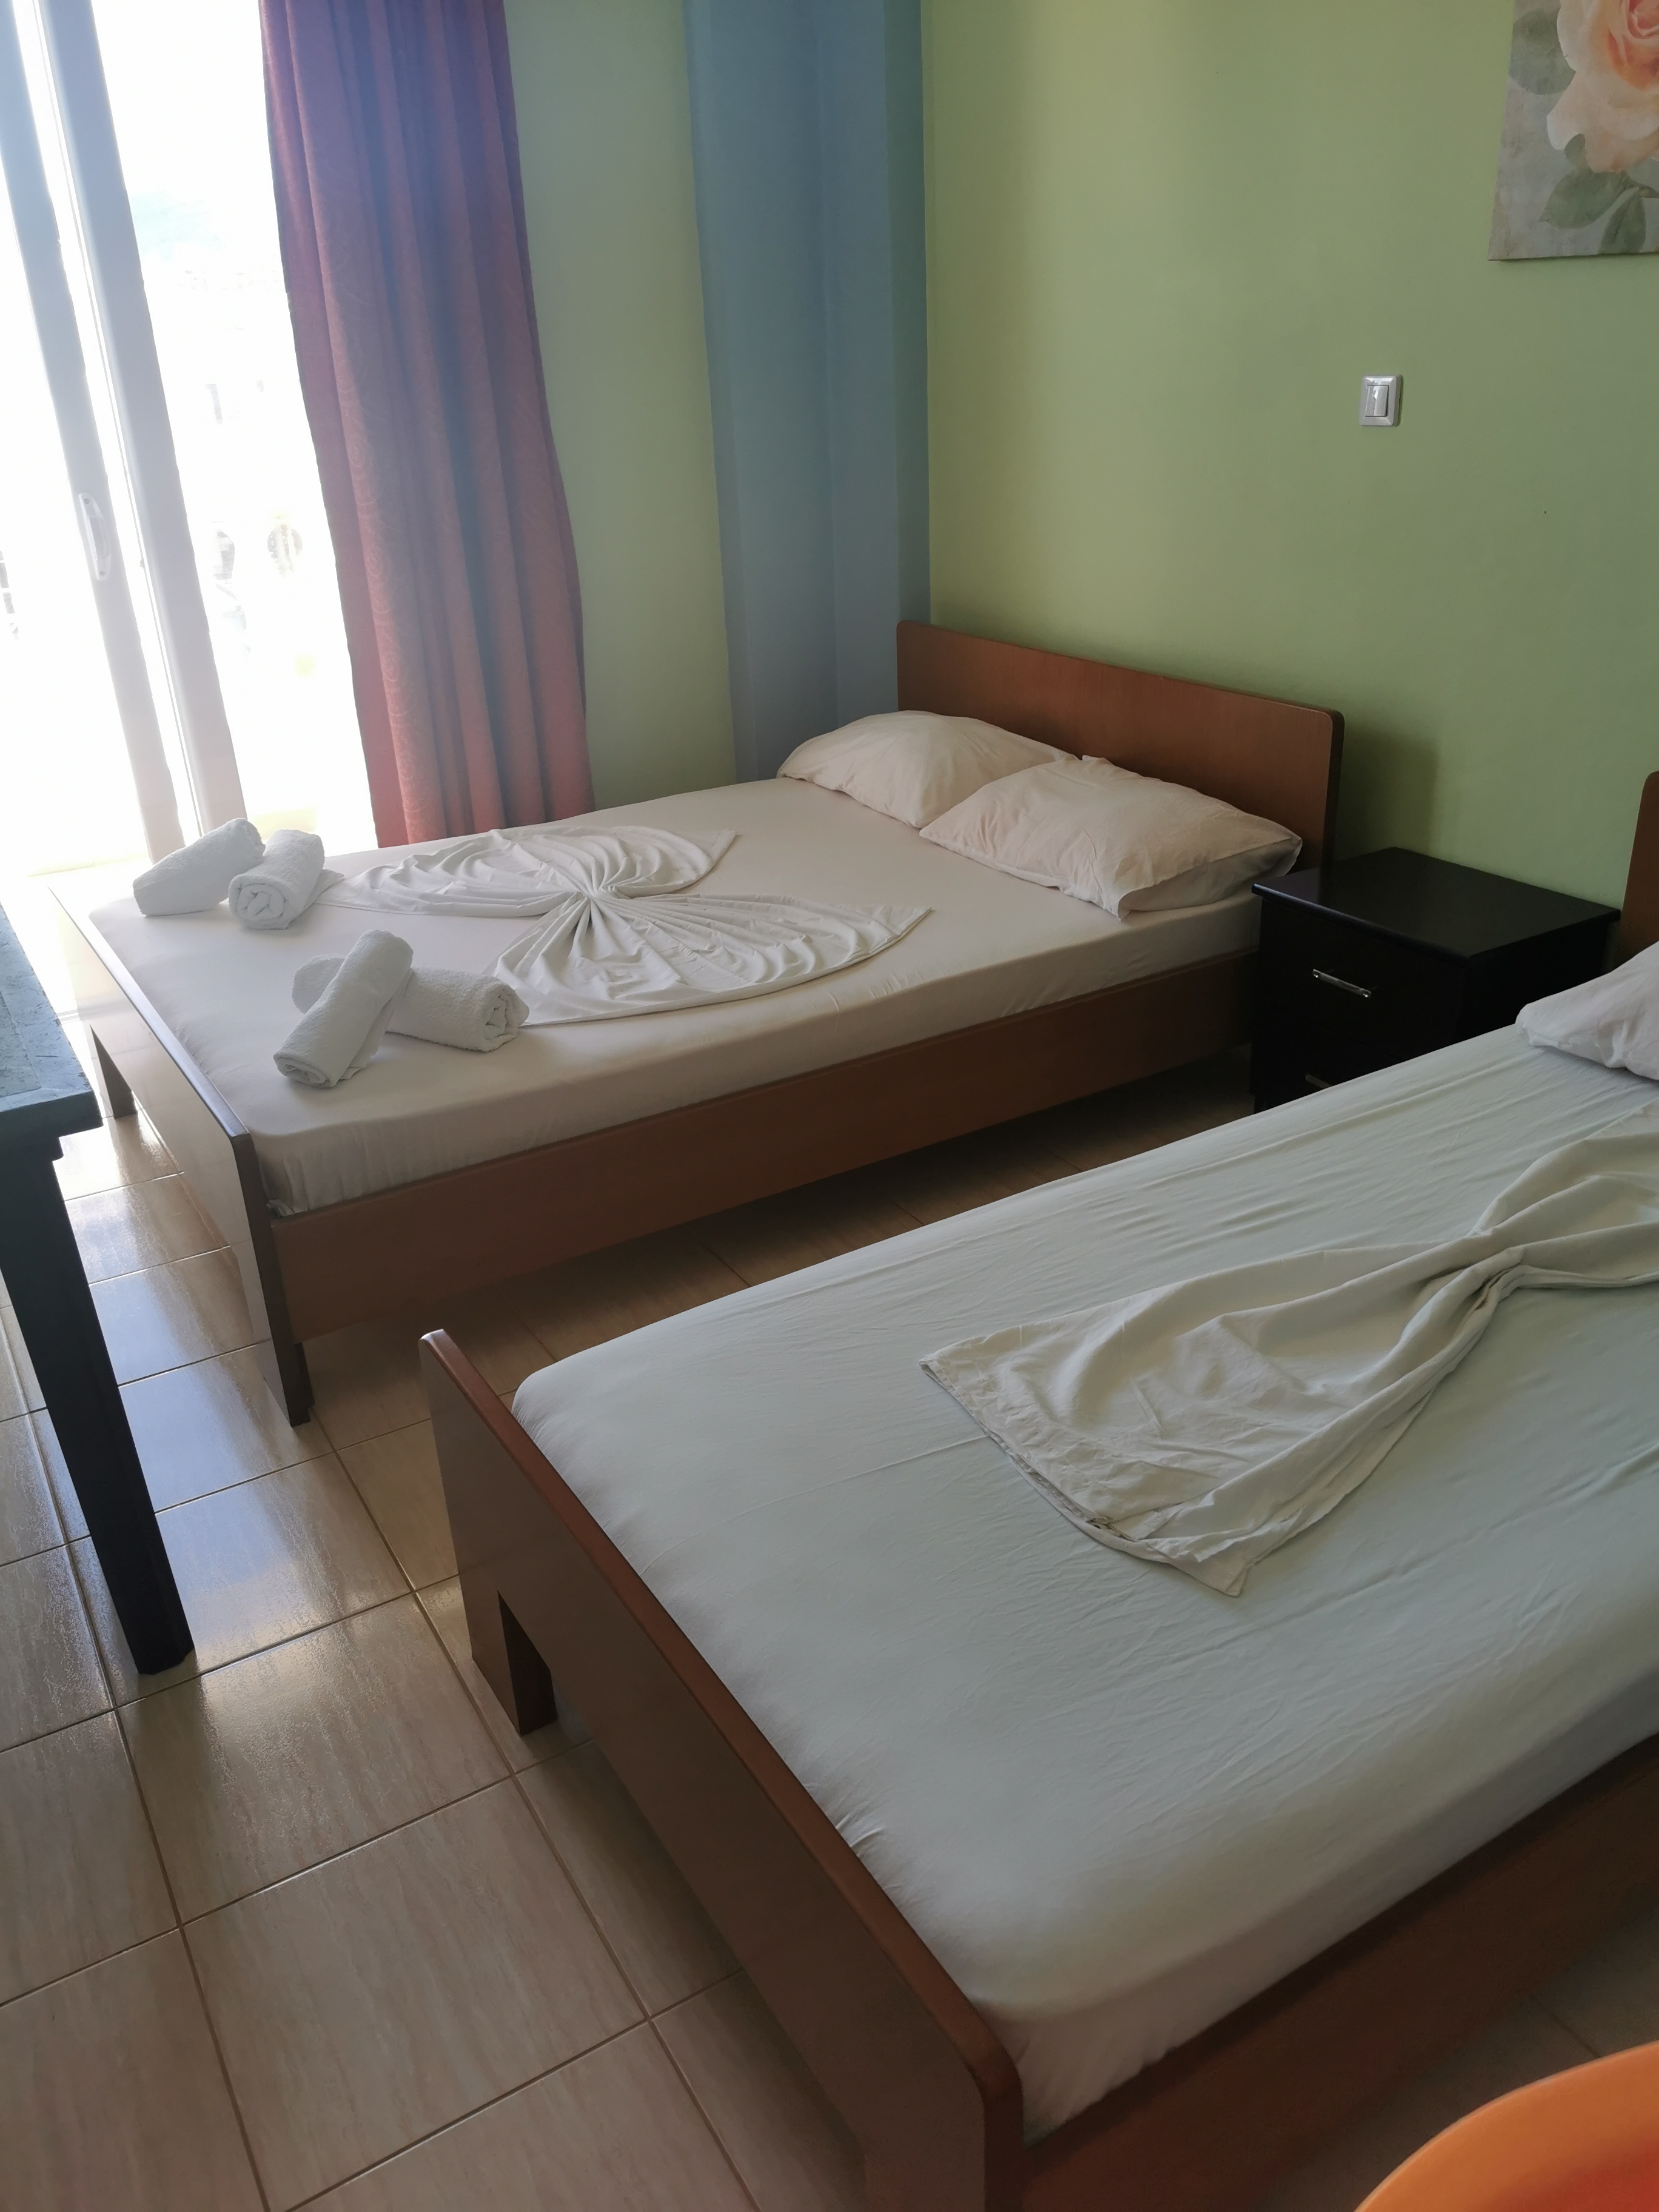 Letovanje Albanija hoteli, Ksamil, autobus, Hotel Drilon, soba